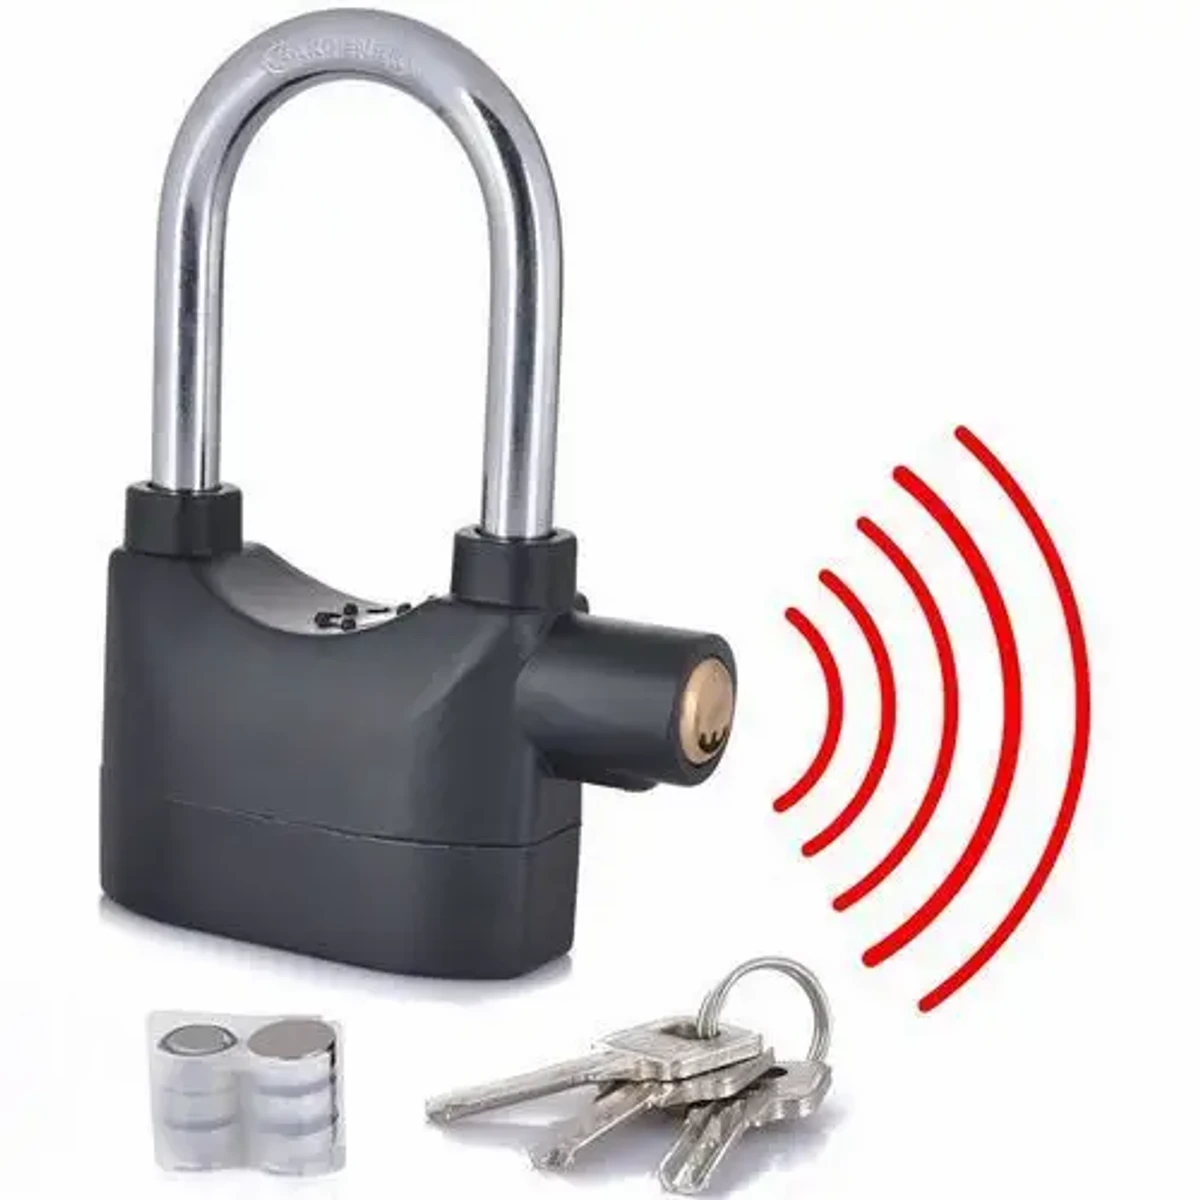 Security Alarm Lock for Bike and Door - Black